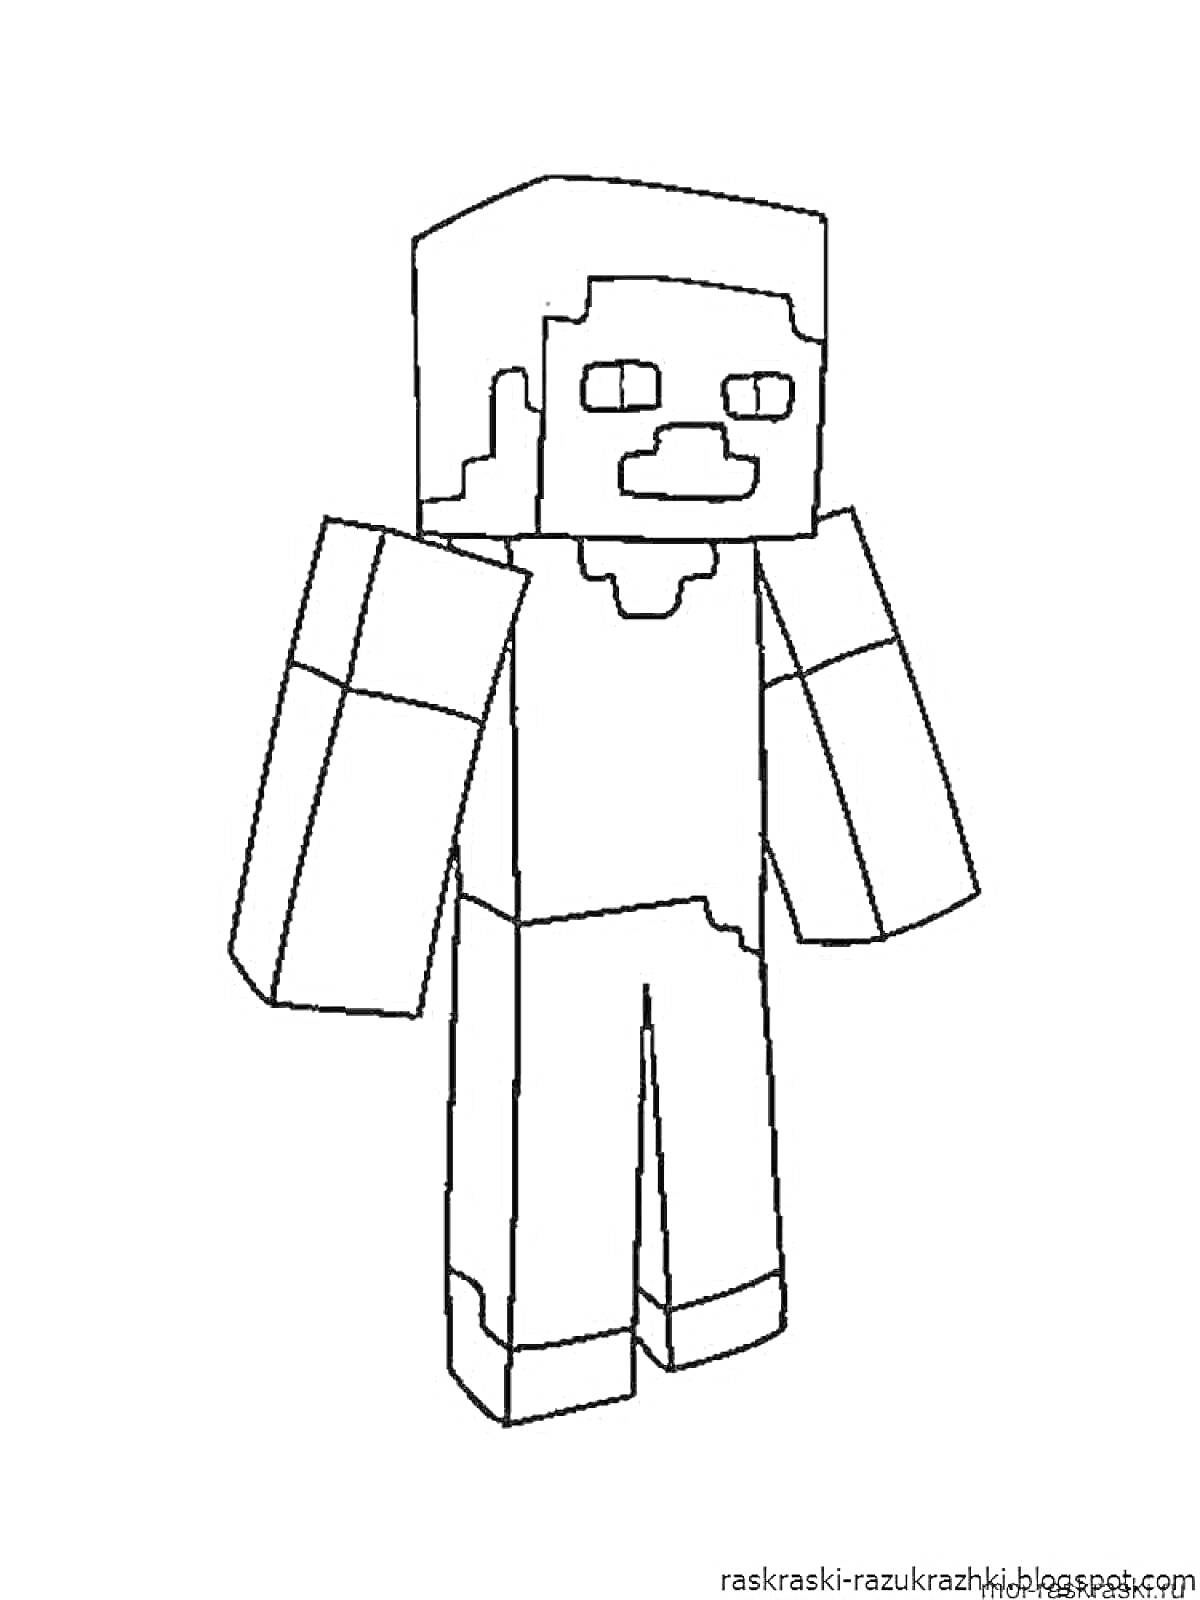 Раскраска Стив из Minecraft; изображение полностью, персонаж стоит, руки опущены.